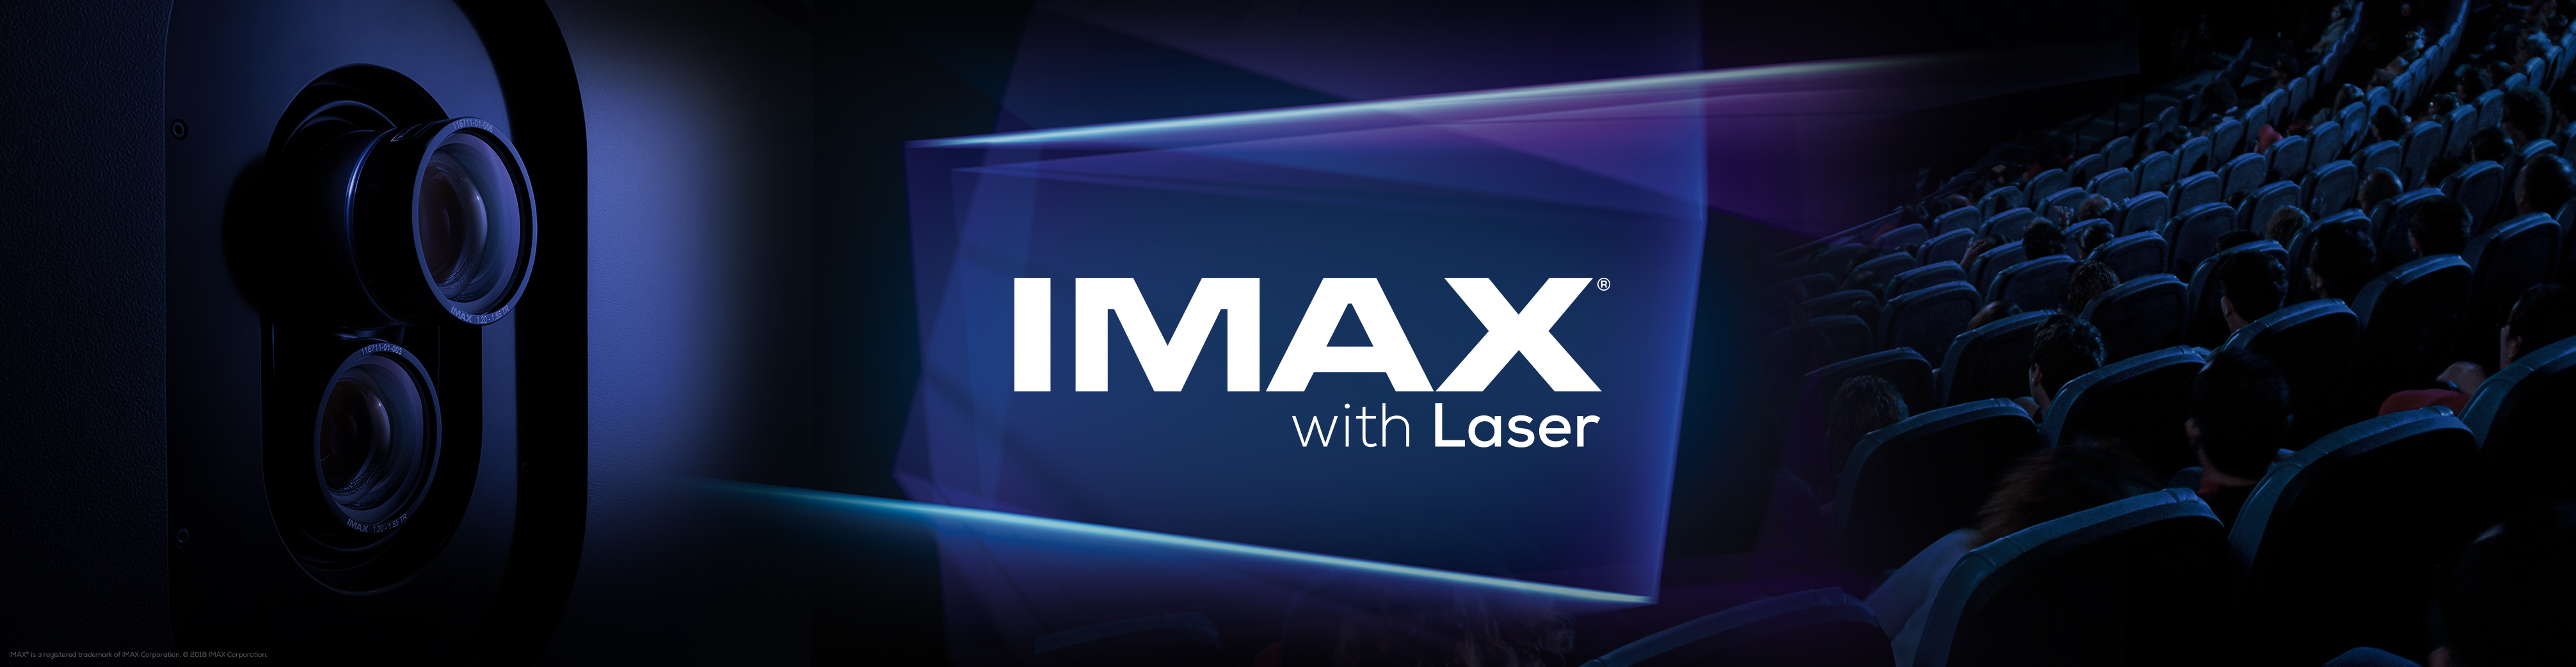 imaxa with laser